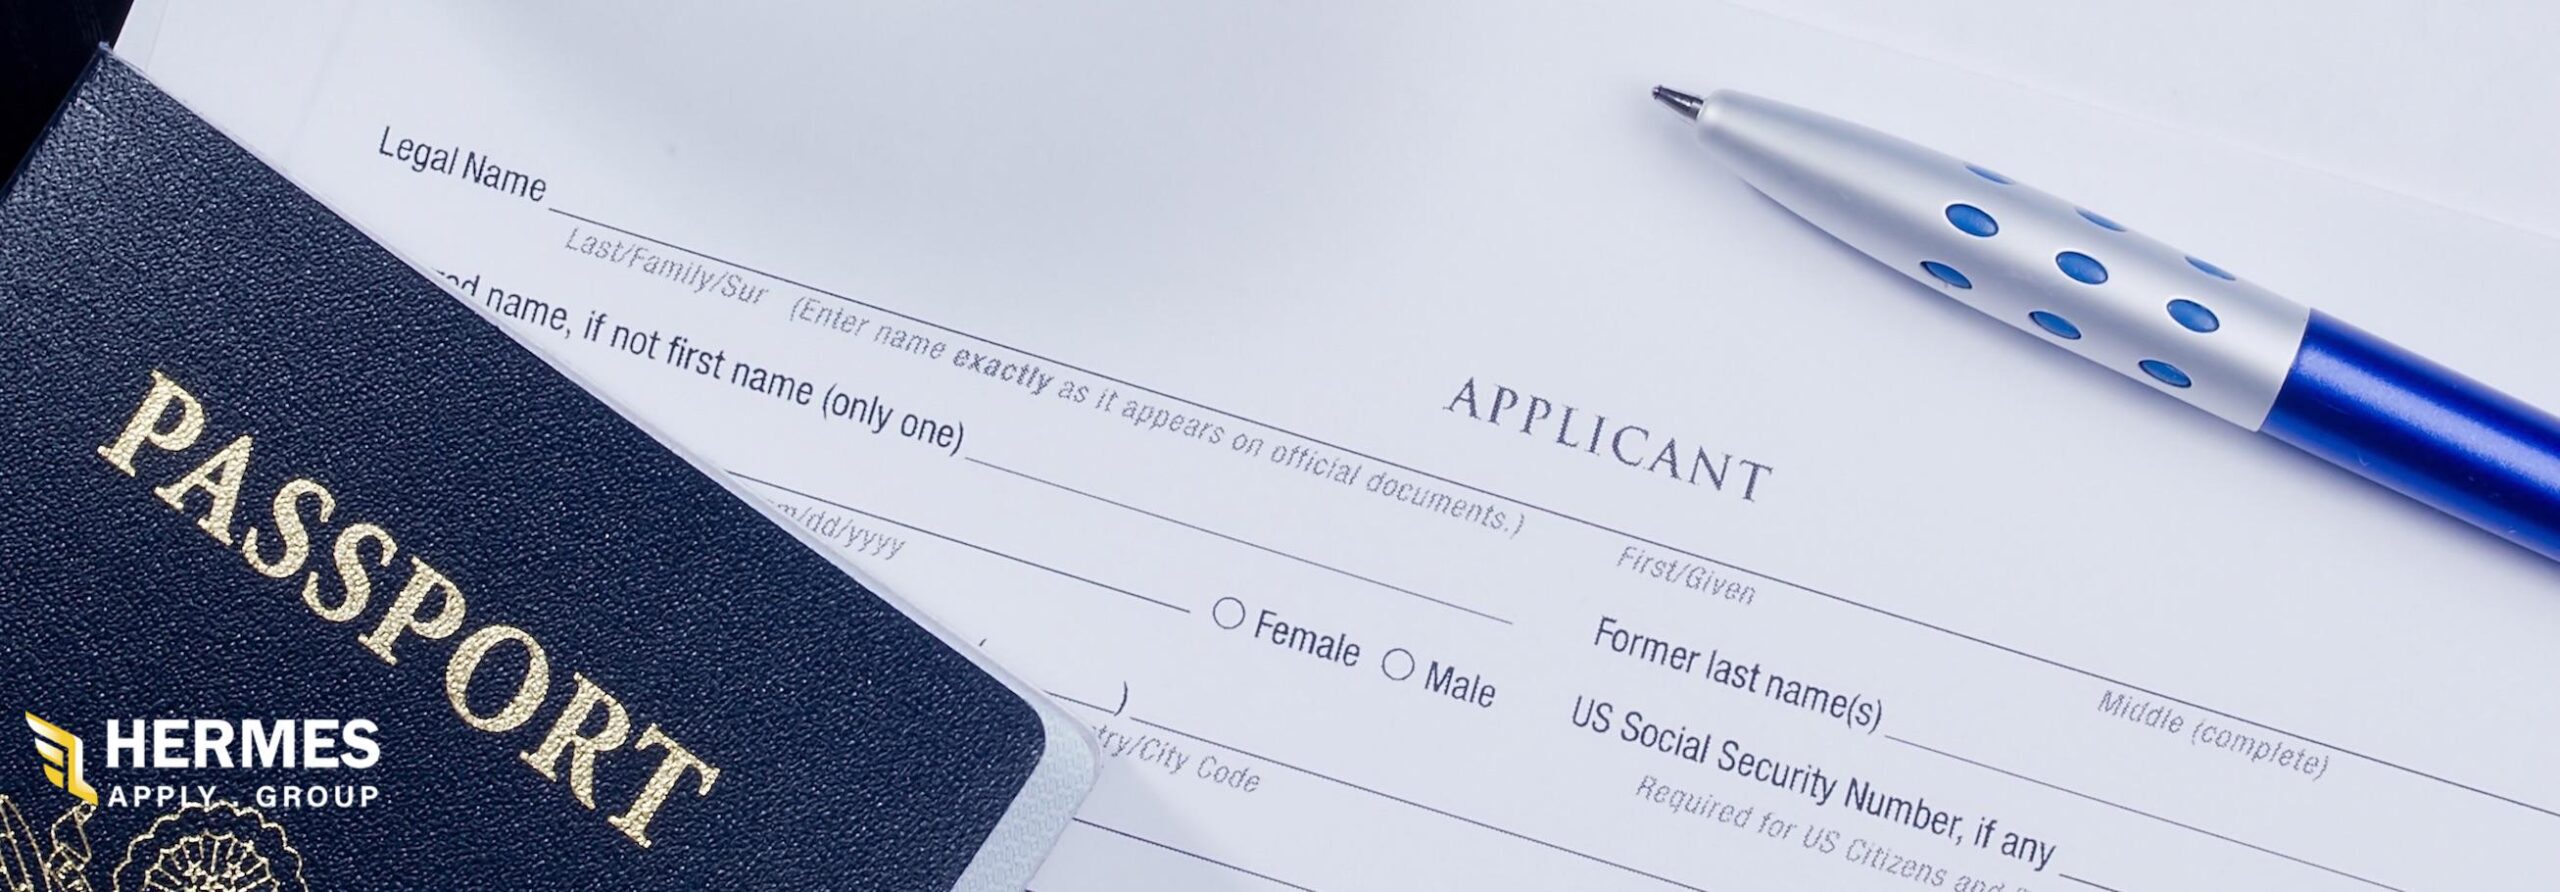 شرایط لازم برای دریافت ویزا همراه مهاجرت تحصیلی به آمریکا